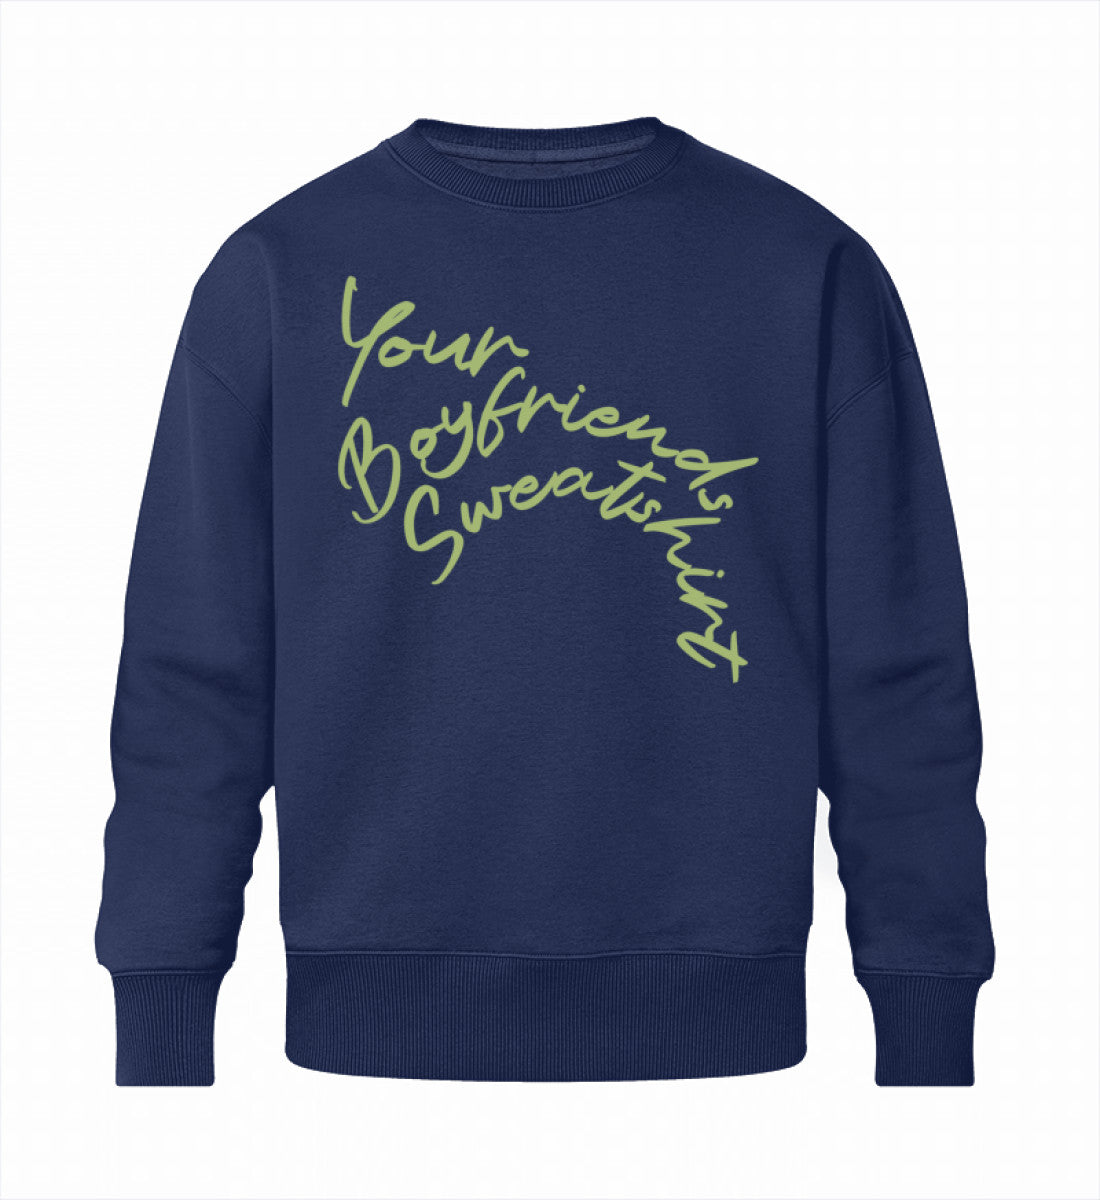 French Navy Blue Sweatshirt Unisex für Frauen und Männer bedruckt mit dem Design der Roger Rockawoo Kollektion Your Boyfriends Sweatshirt